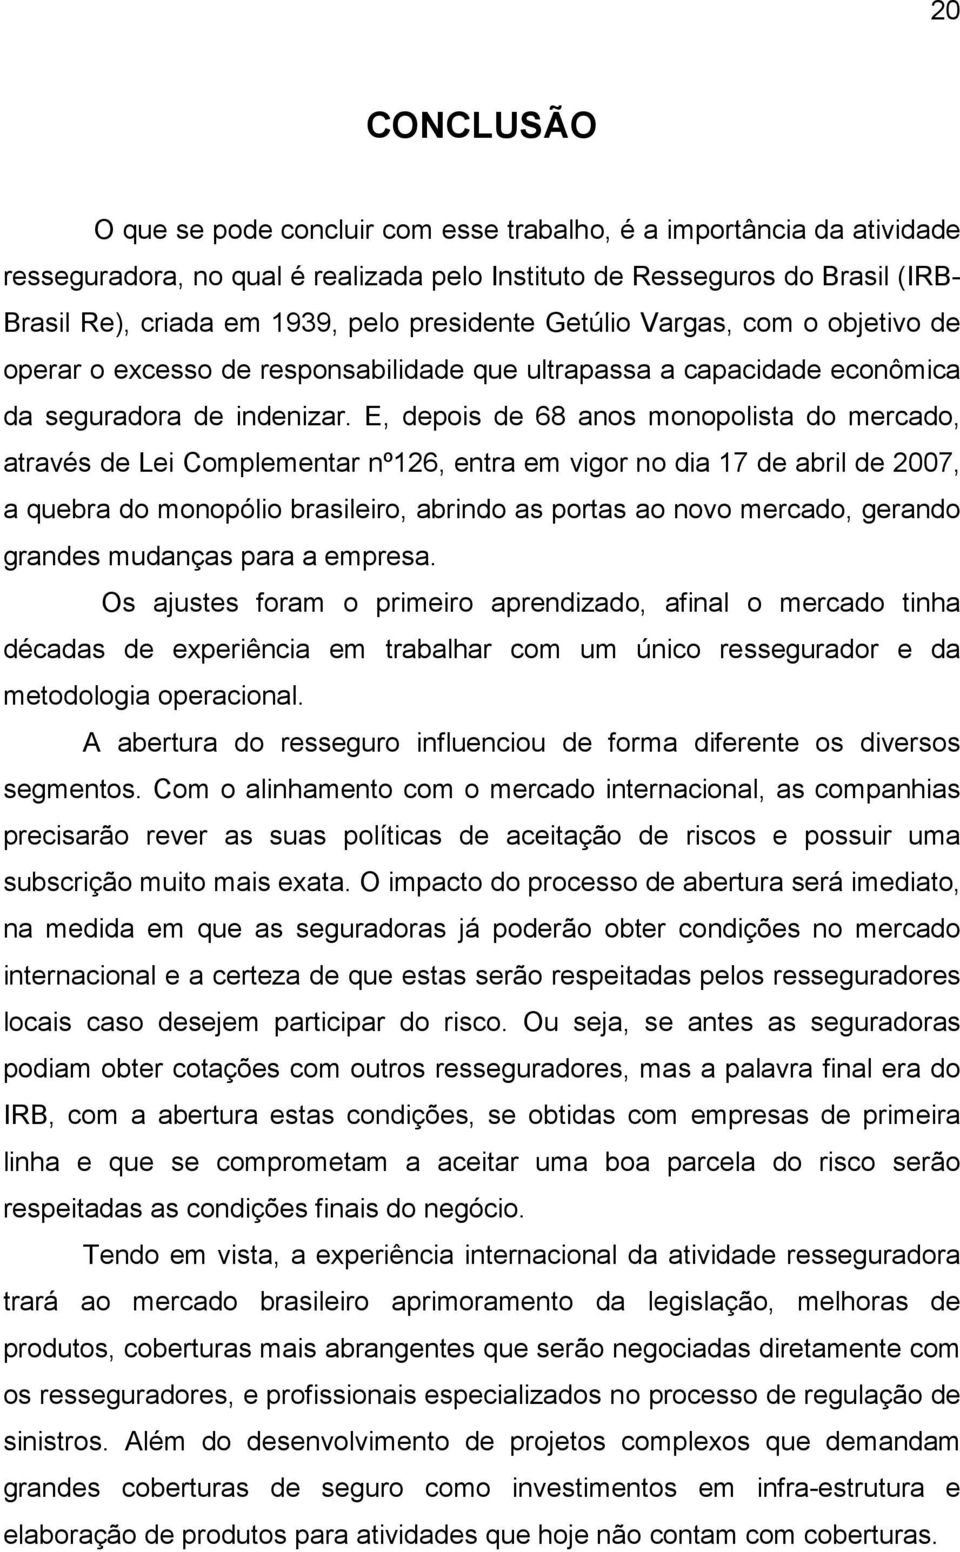 E, depois de 68 anos monopolista do mercado, através de Lei Complementar nº126, entra em vigor no dia 17 de abril de 2007, a quebra do monopólio brasileiro, abrindo as portas ao novo mercado, gerando